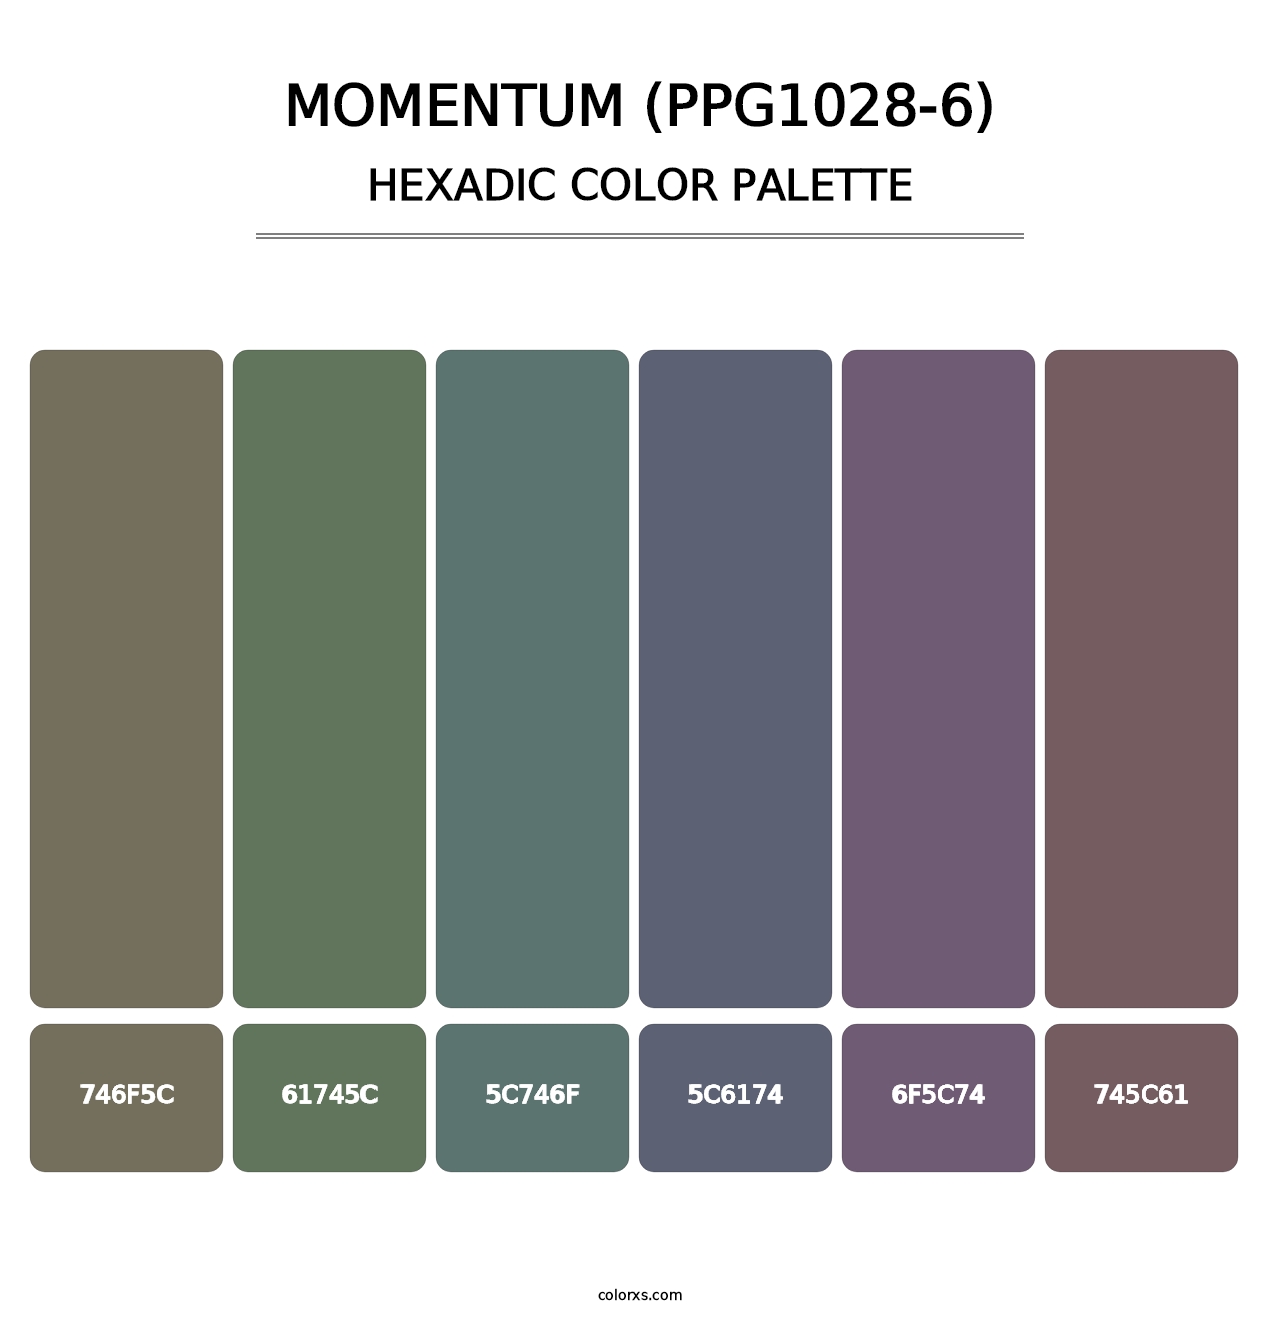 Momentum (PPG1028-6) - Hexadic Color Palette